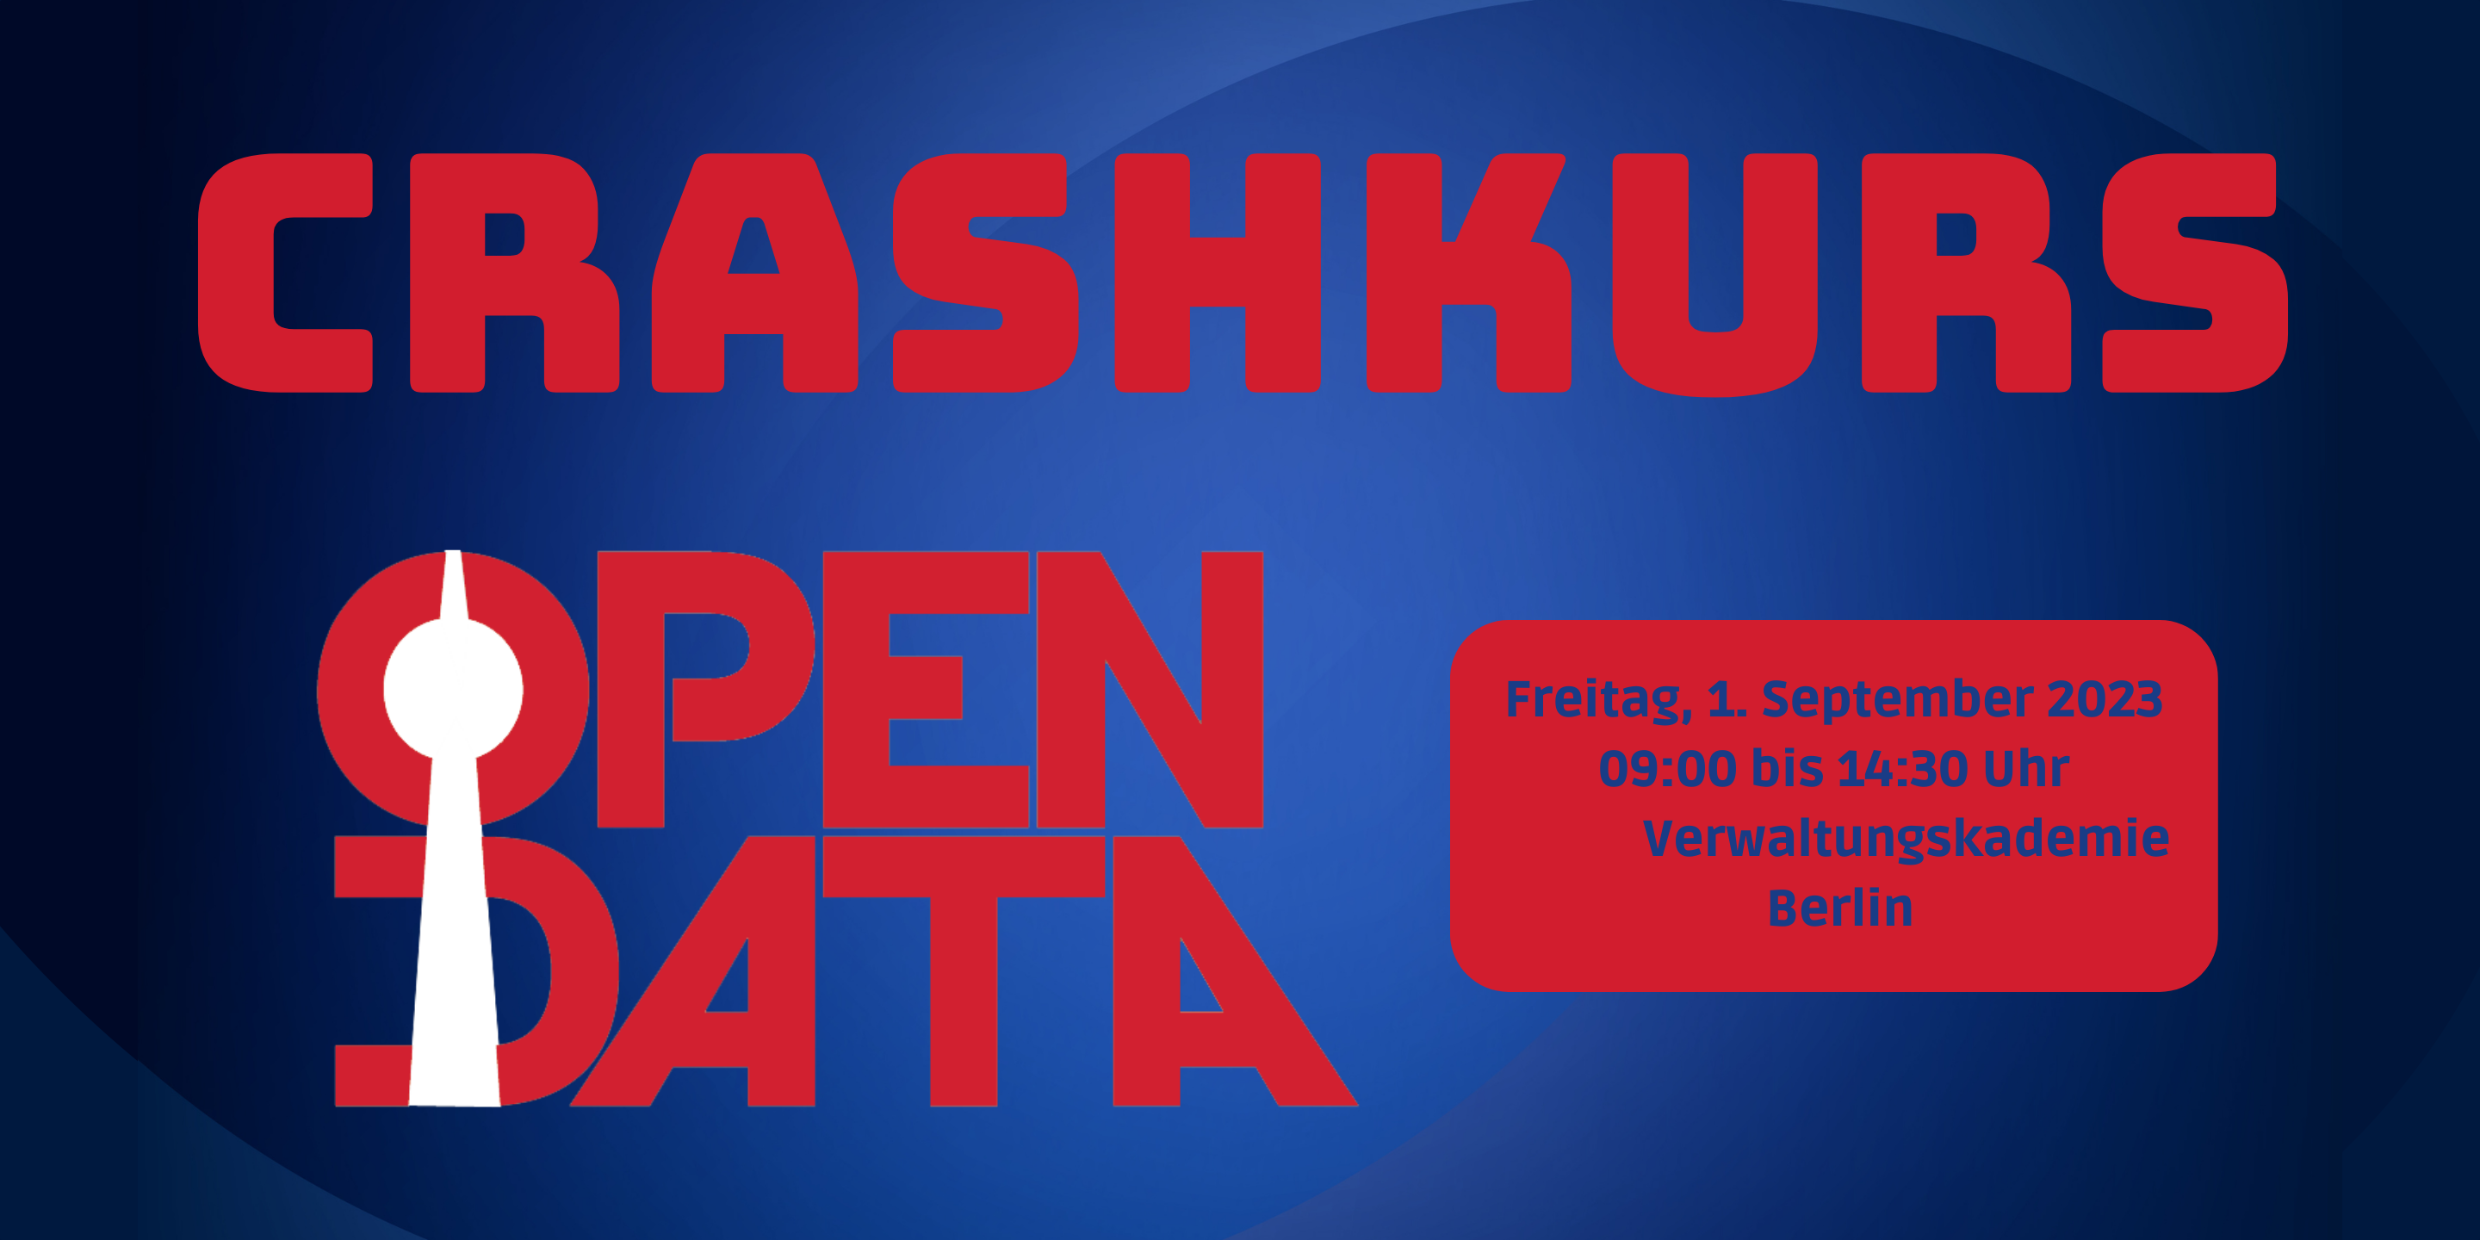 Roter Schriftzug "Crashkurs Open Data" vor blauem Hintergrund.